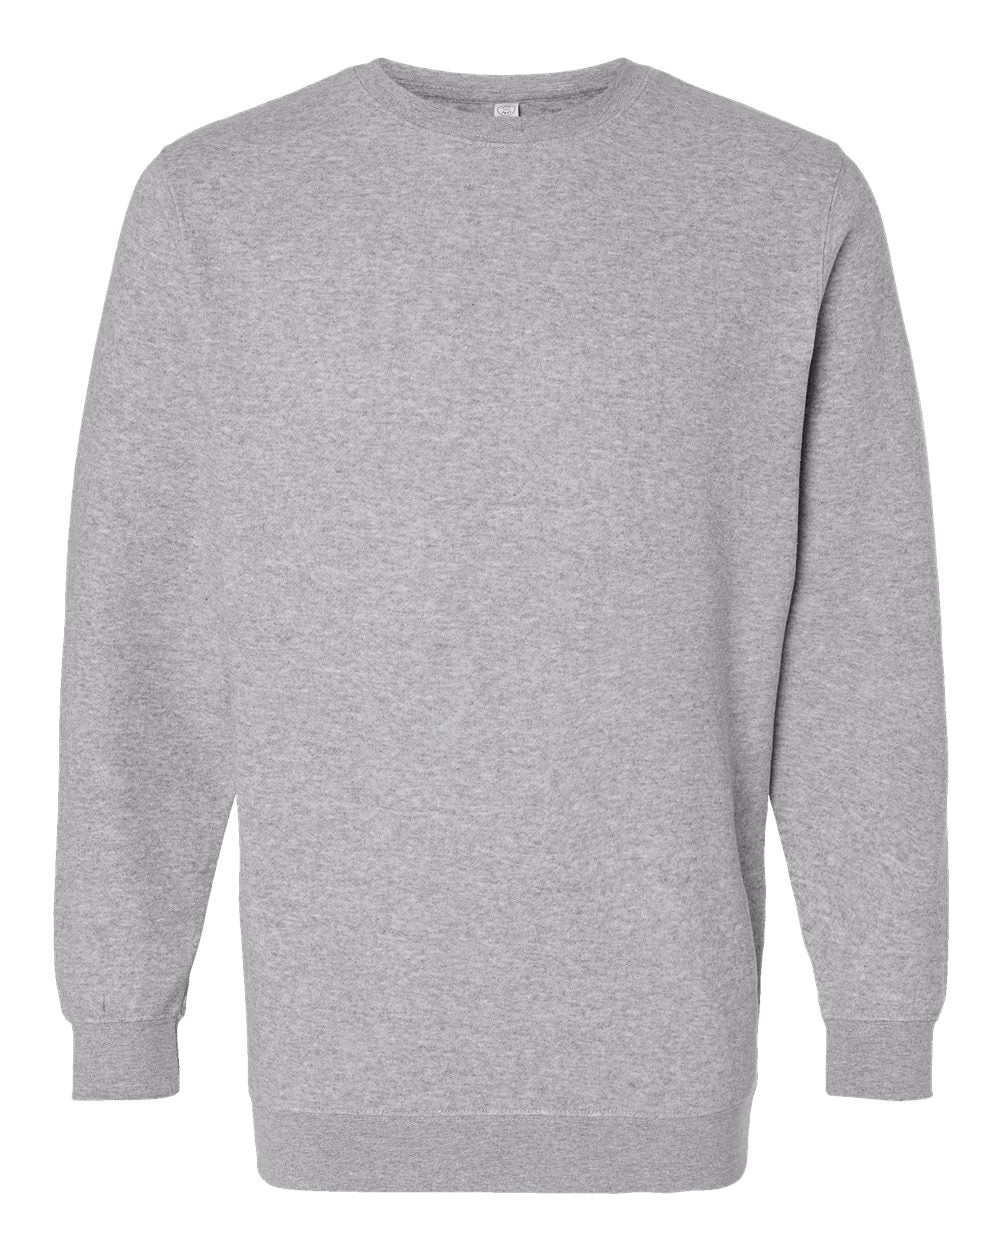 LAT Elevated Fleece Crewneck Sweatshirt